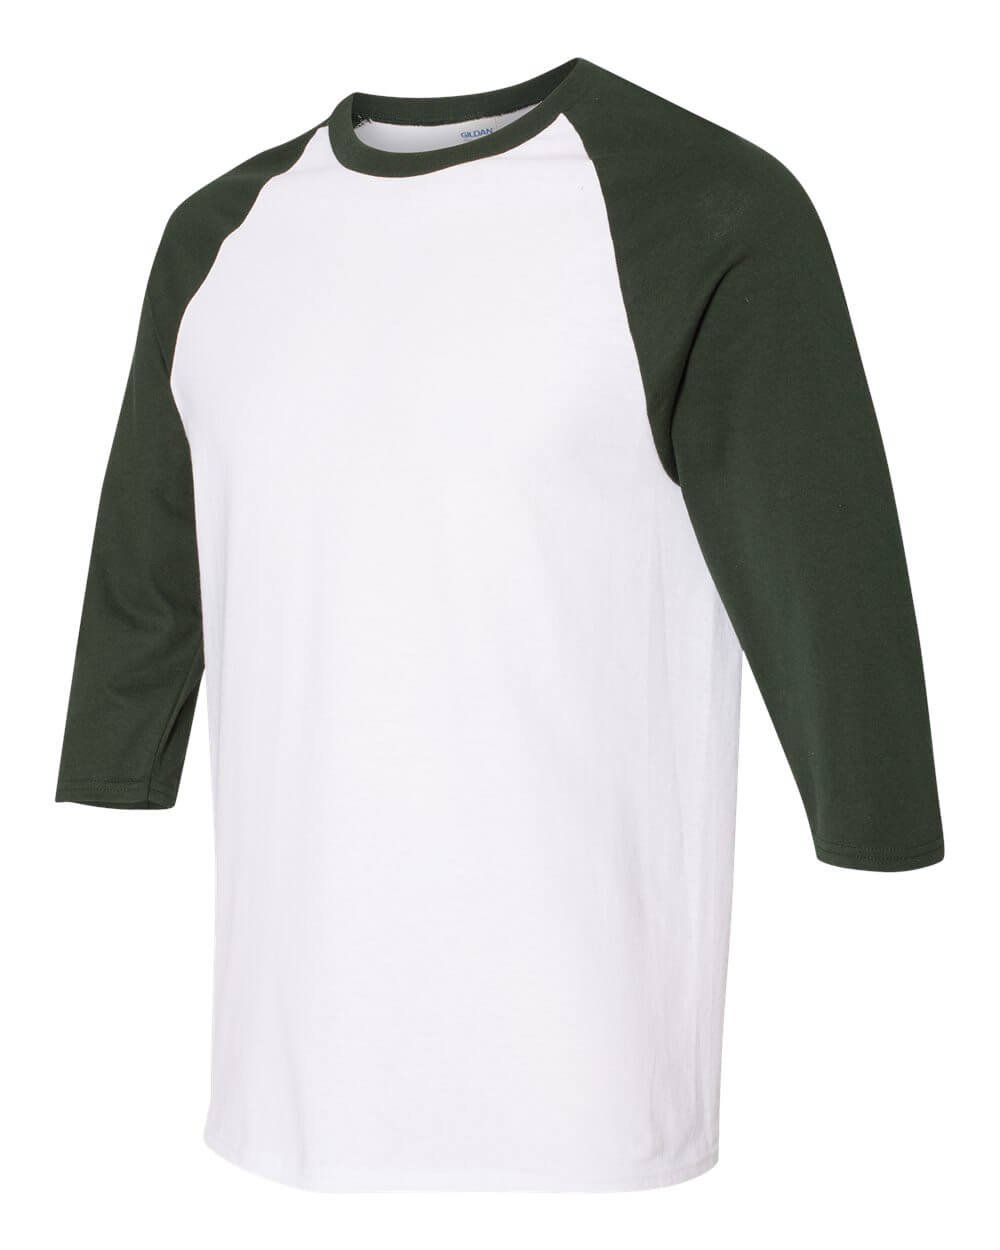 Camiseta Verde Para Hombre Con Manga Larga Raglán Blanca. Representación 3d  Aislado Sobre Fondo Blanco Fotos, retratos, imágenes y fotografía de  archivo libres de derecho. Image 95526564